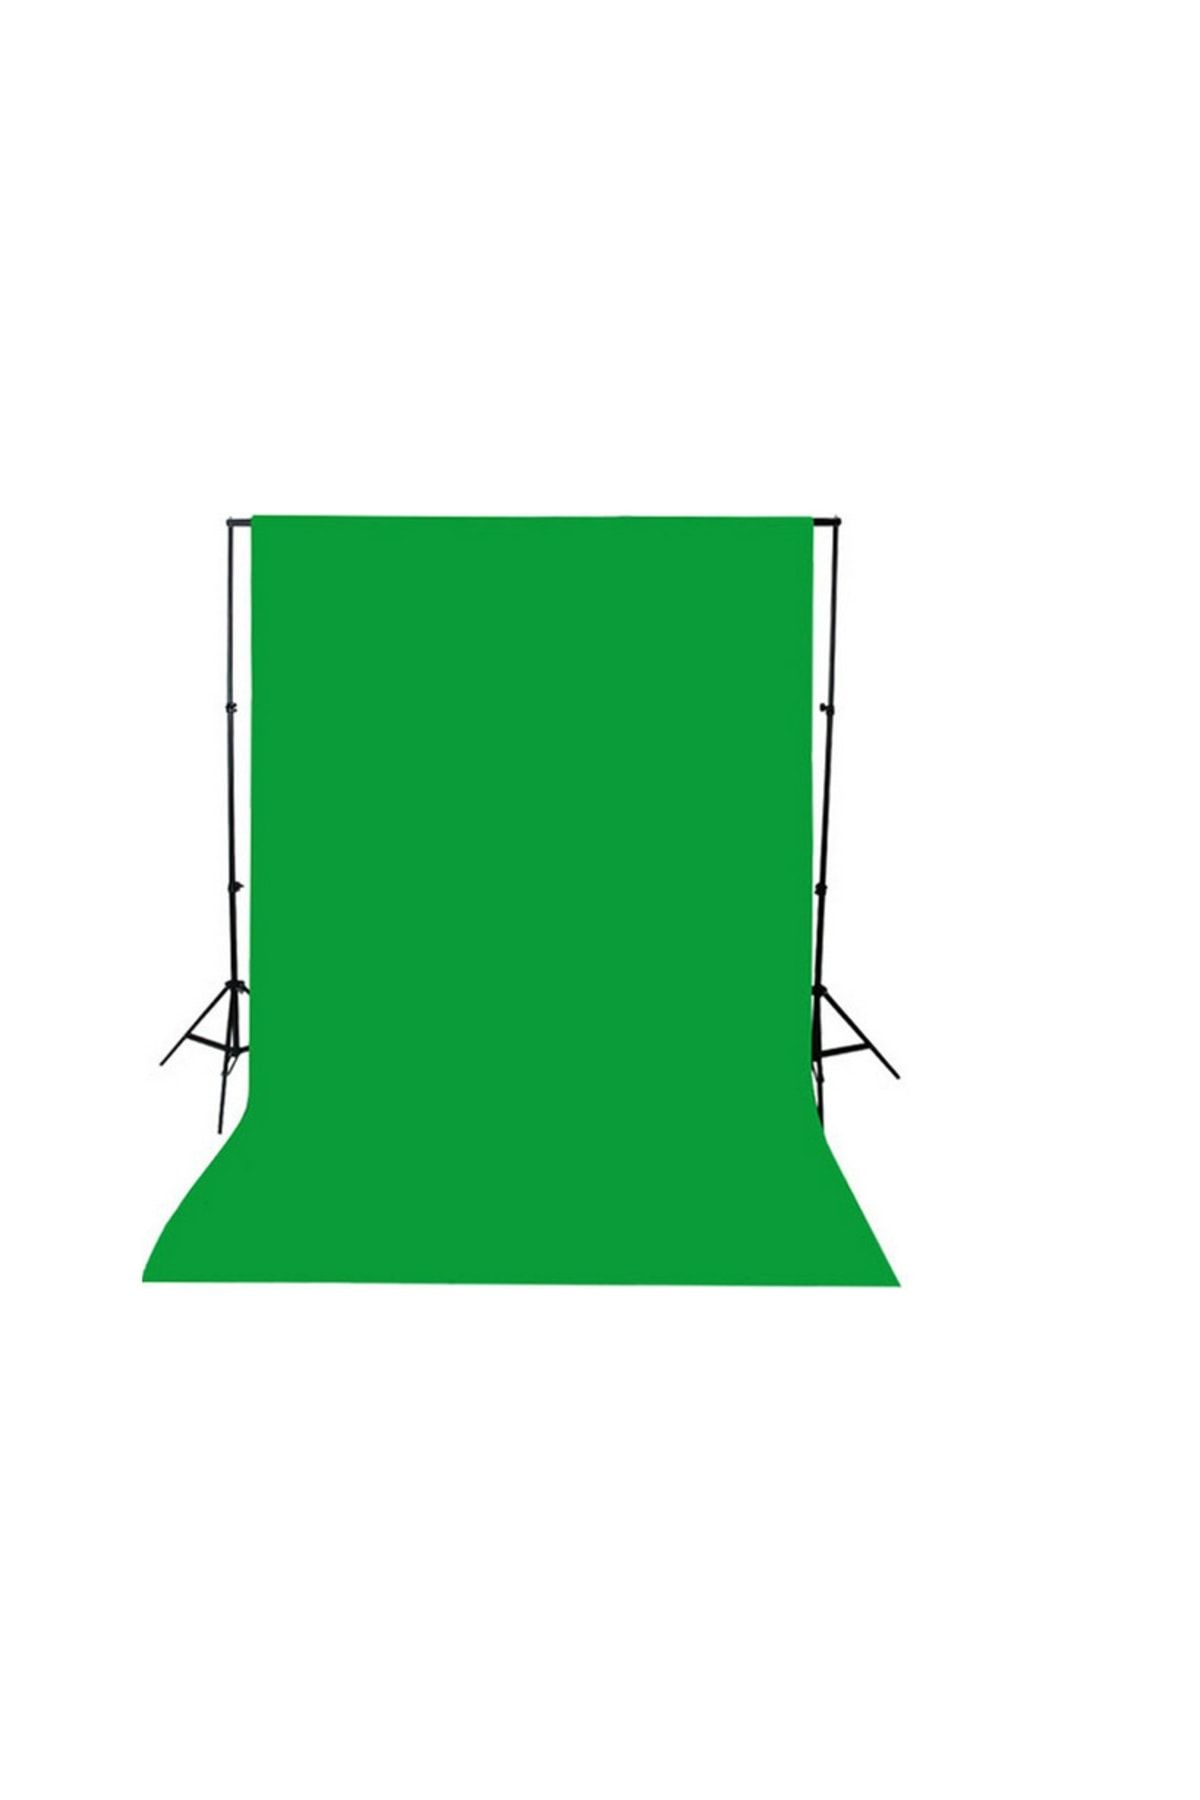 ADA GREENBOX Chromakey-green Screen- Greenbox Yeşil Fon Perde(2x3 M) + Fon Standı